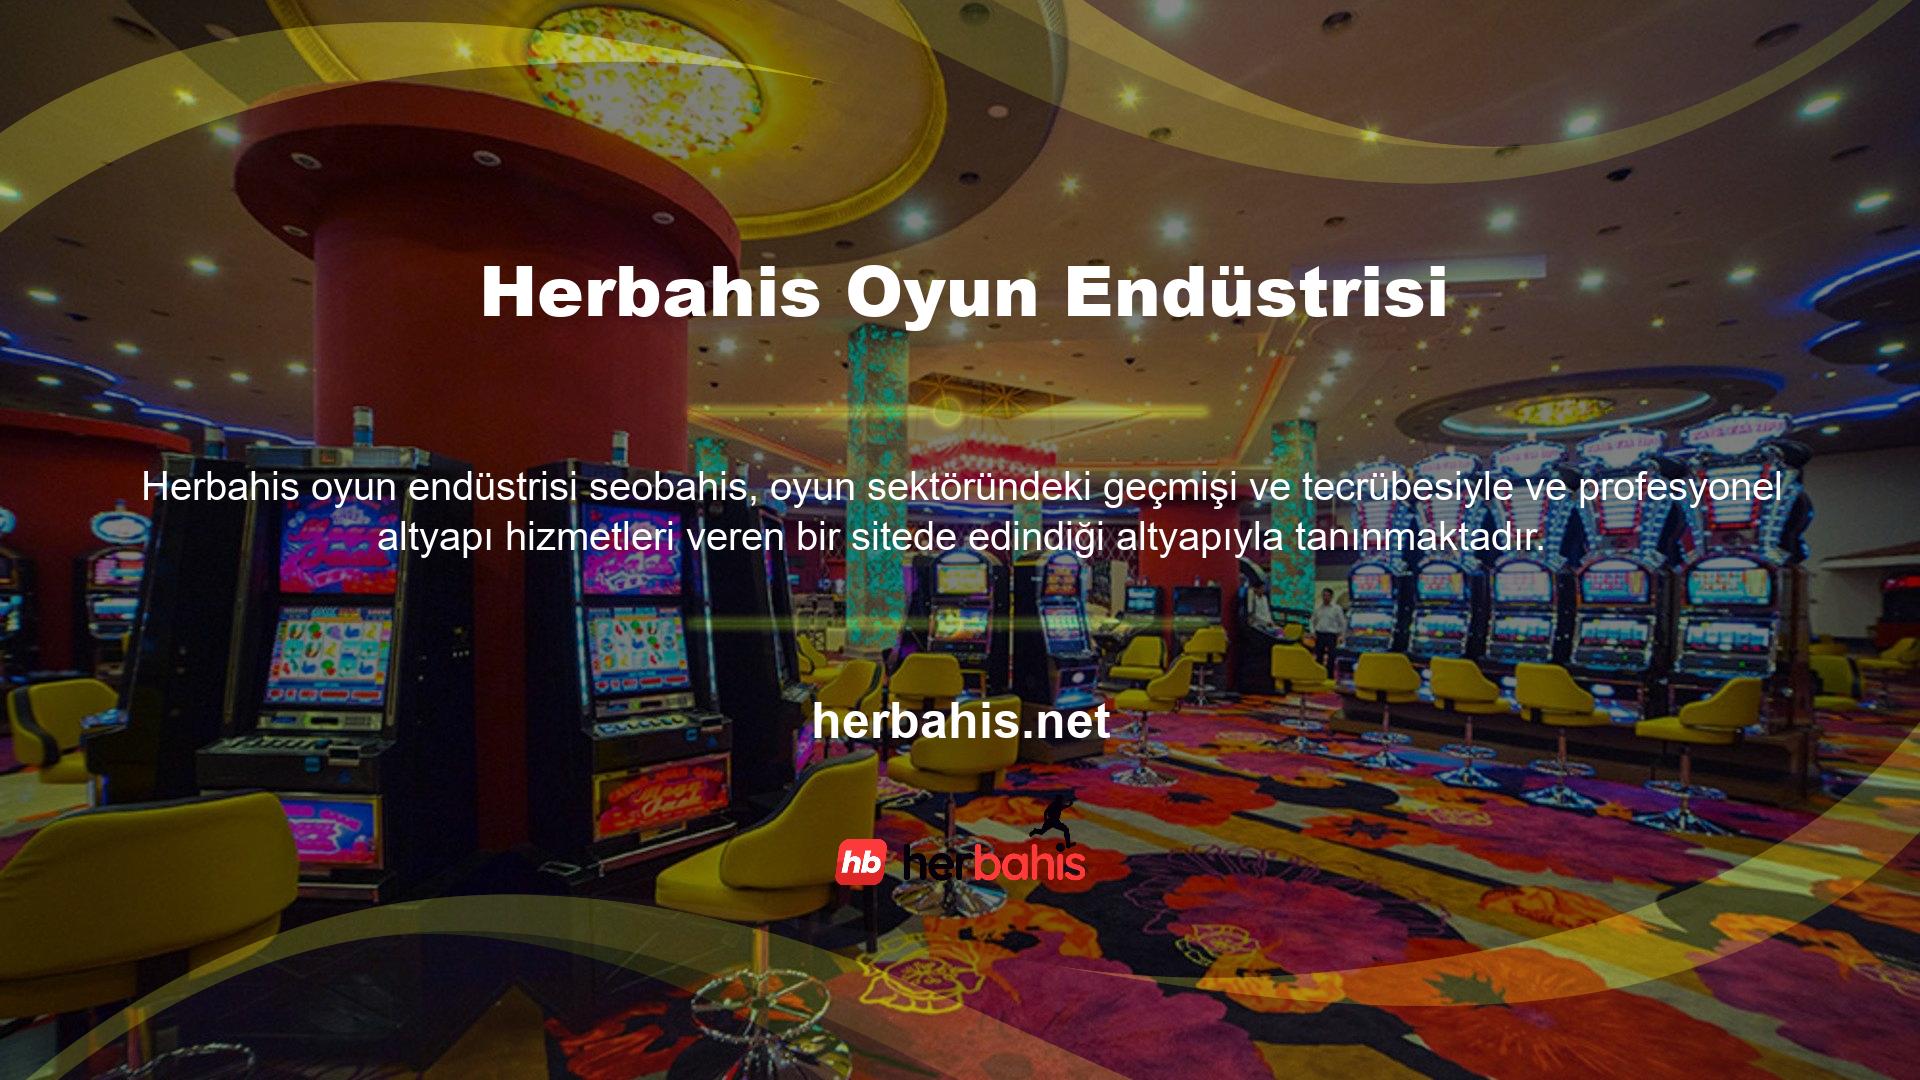 Üyelerimize casino oyunları oynama fırsatı sunmak amacıyla Herbahis web sitesi casino sitelerine altyapı desteği sağlamakta ve dünyaca ünlü altyapı hizmetleri sağlayan casino siteleriyle ortaklık yapmaktadır